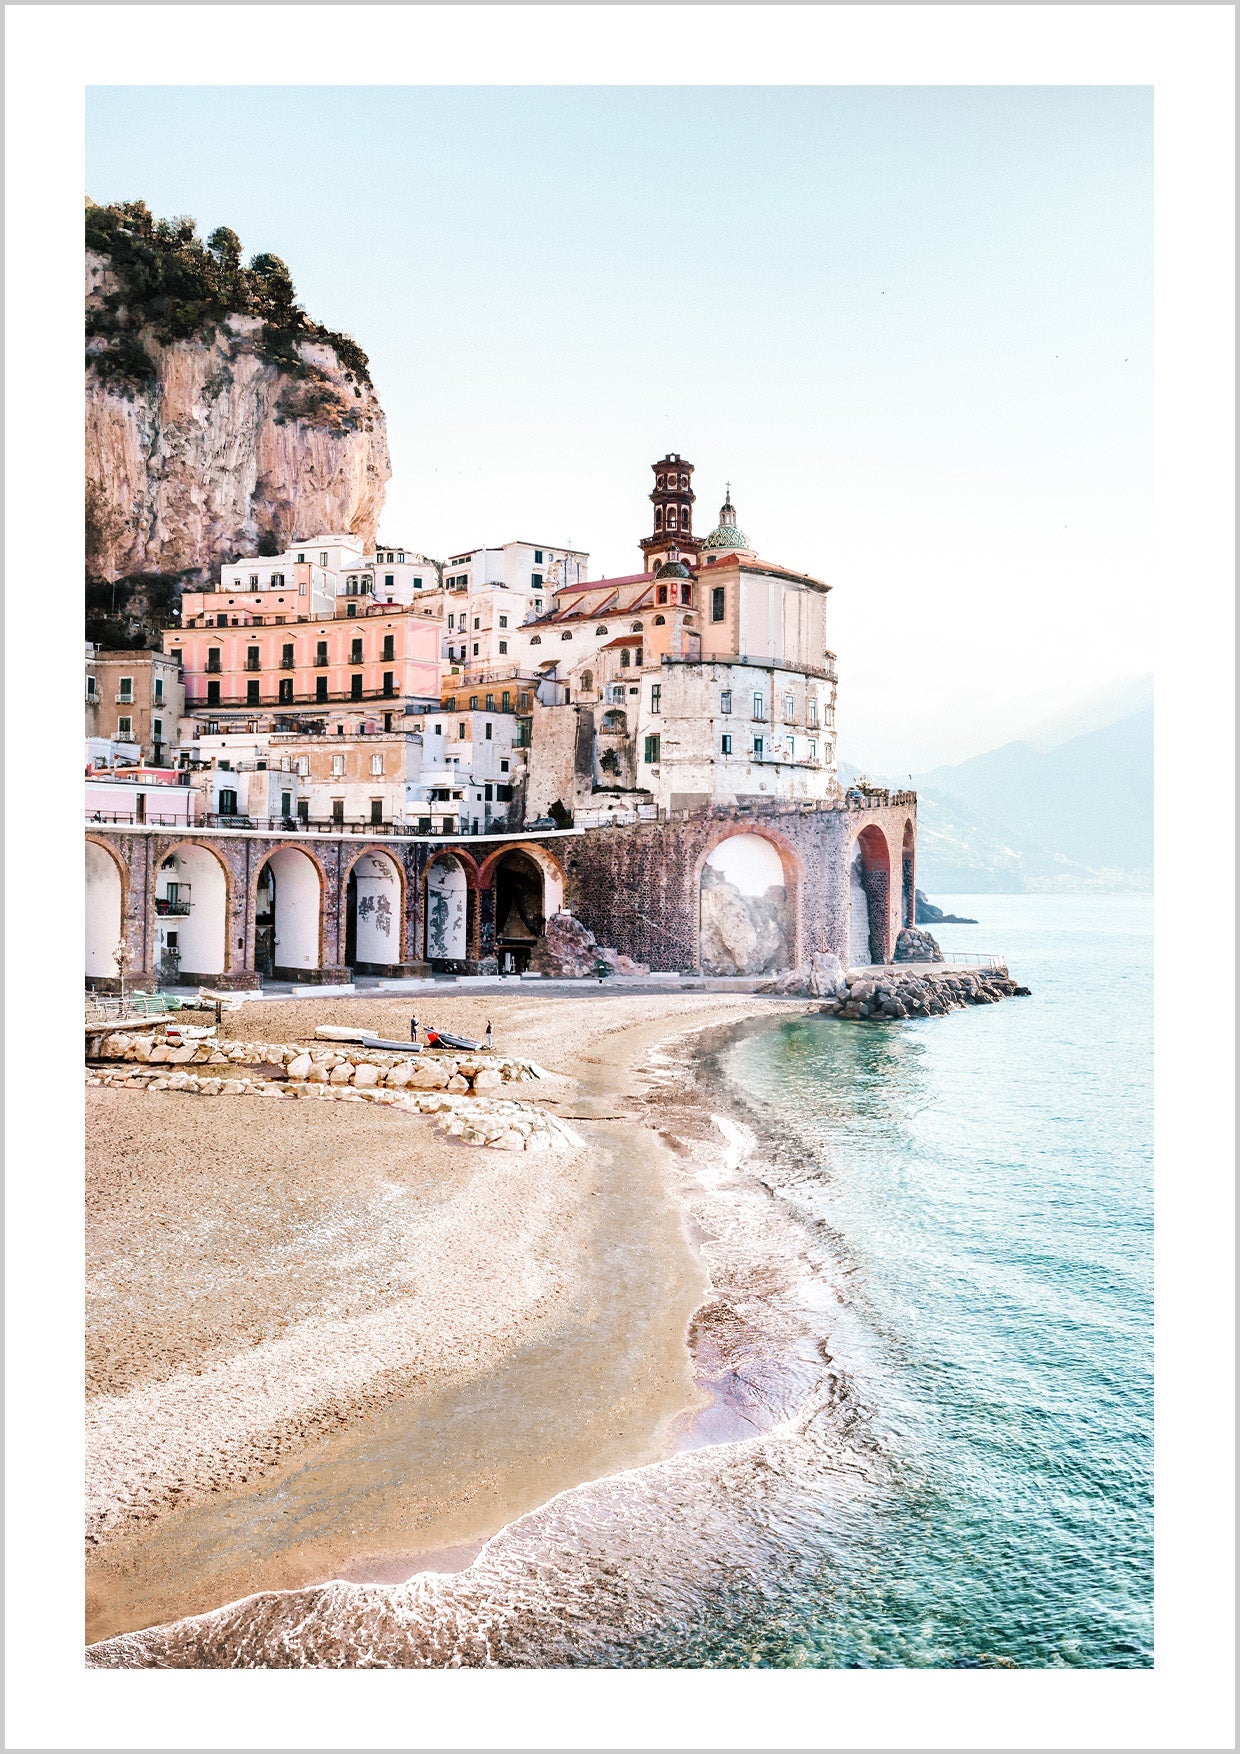 Beach, Amalfi Coast. Town by the sea and sandy beach on the Amalfi Coast in Italy